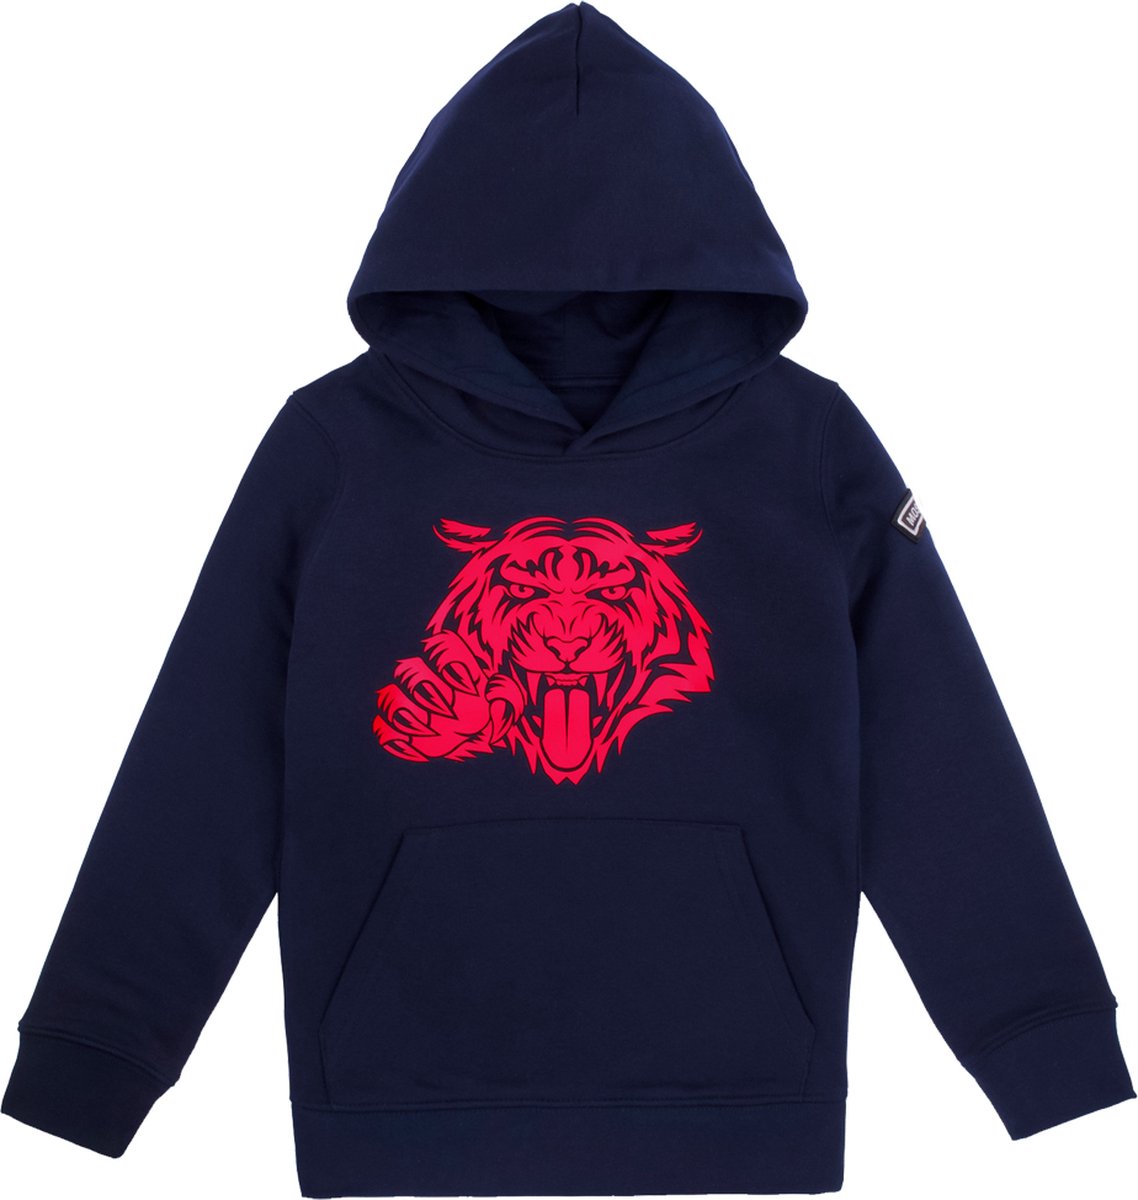 Most Hunted - kinder hoodie - tijger - navy - rood - maat 152-164